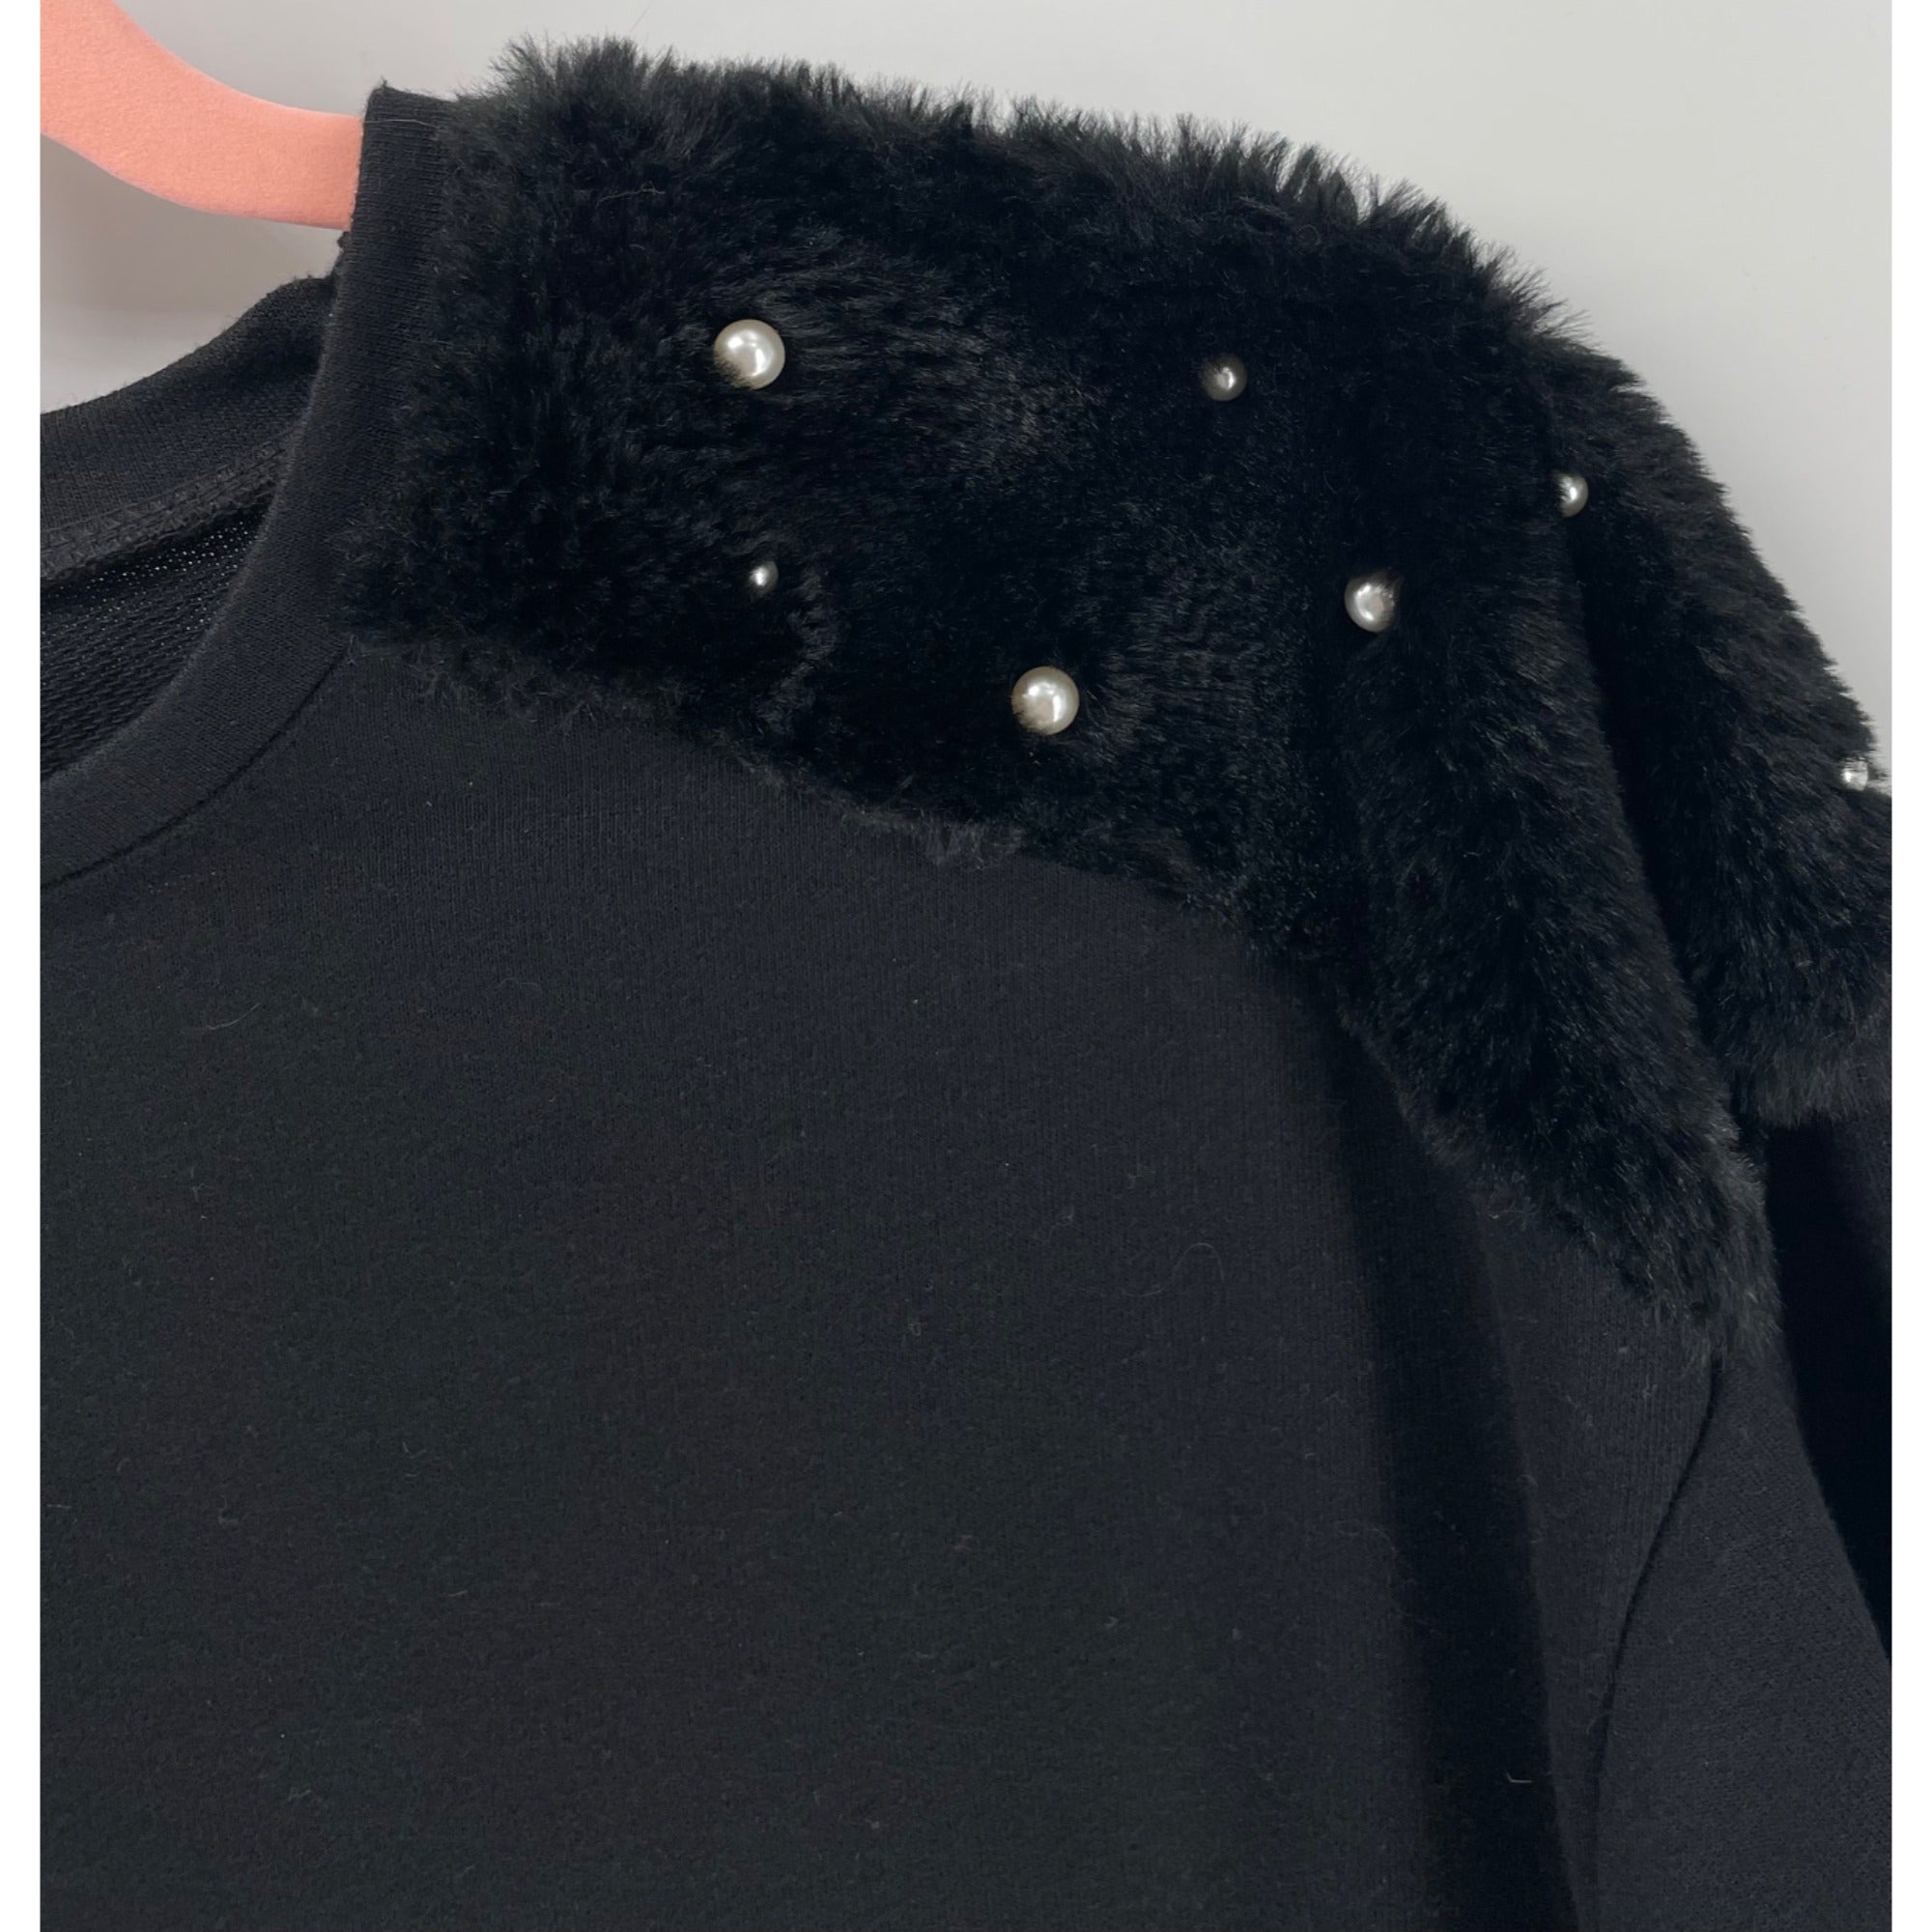 Zara Women’s Small Black Women’s Faux Fur & Pearl Shoulder Long-Sleeved Top